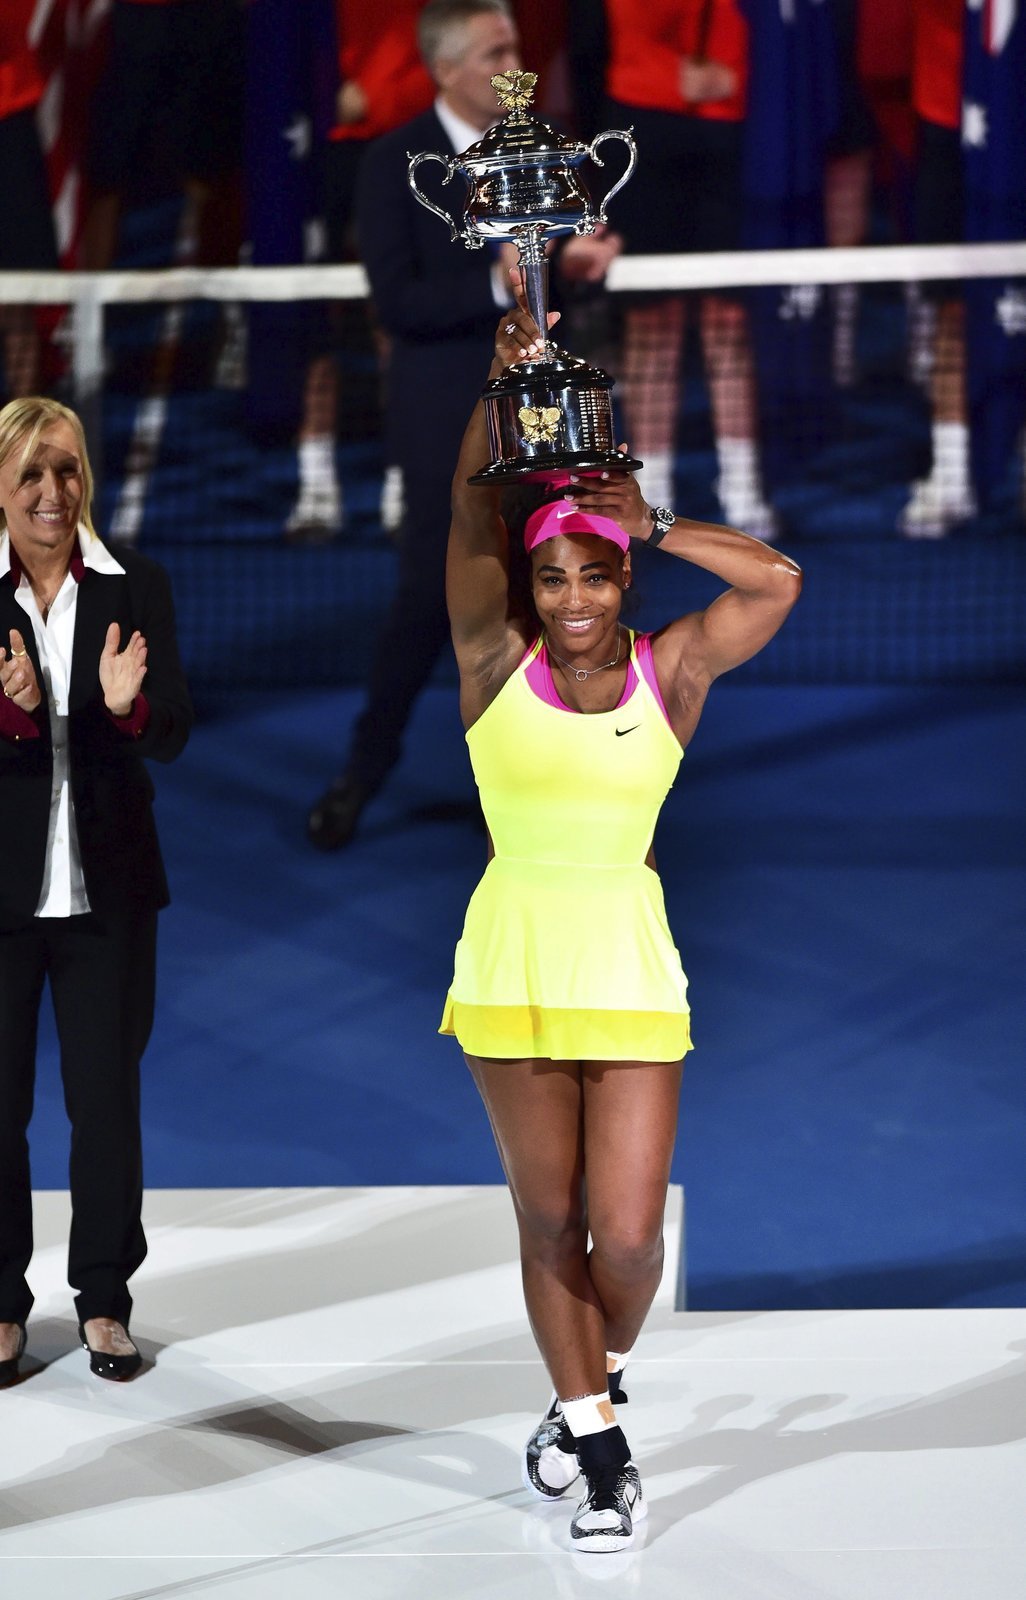 Serena Williamsová s trofejí pro vítězku Australian Open po výhře nad Ruskou Šarapovovou